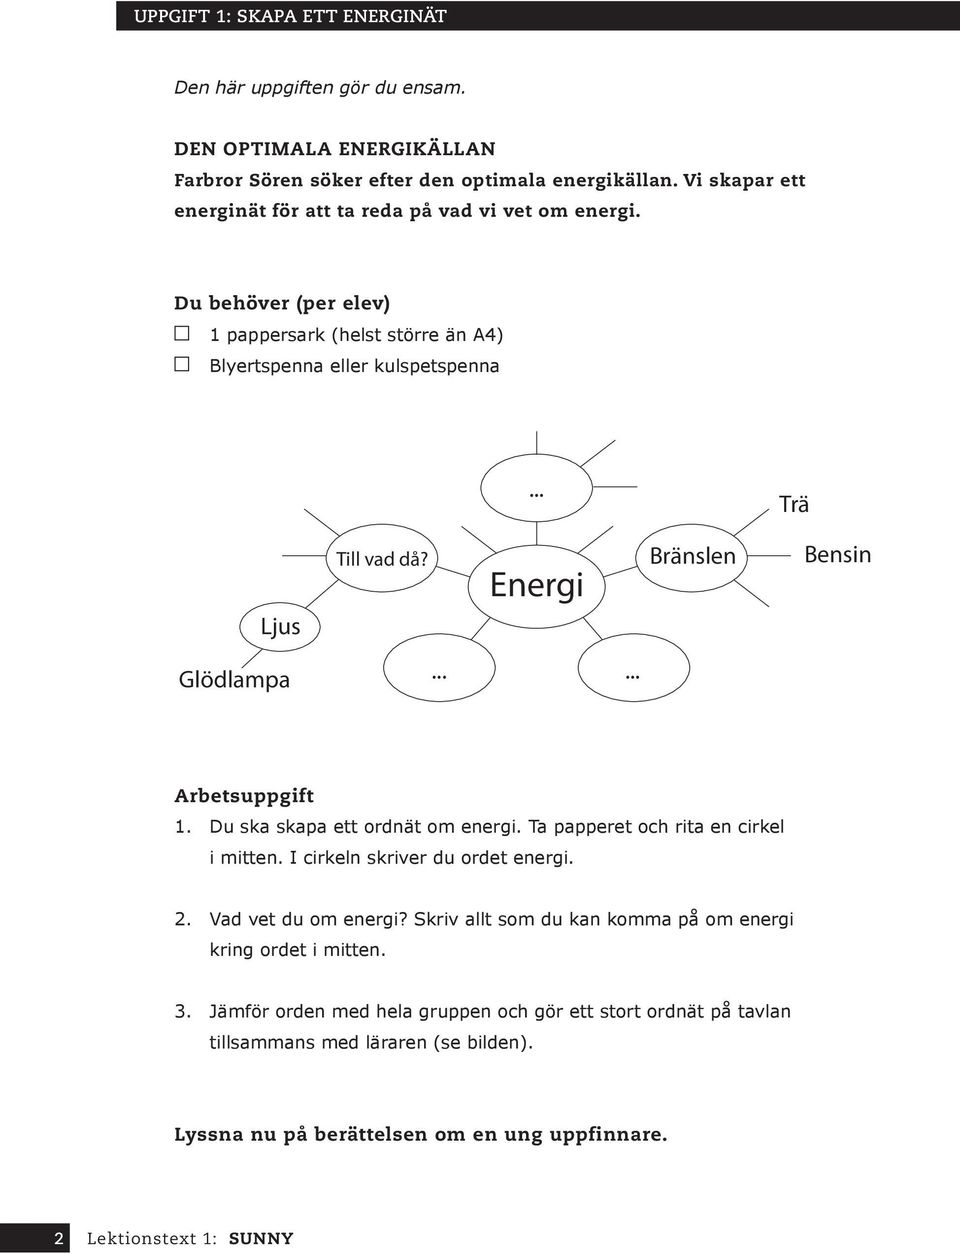 ... Energi...... Bränslen Trä Bensin Arbetsuppgift 1. Du ska skapa ett ordnät om energi. Ta papperet och rita en cirkel i mitten. I cirkeln skriver du ordet energi. 2.